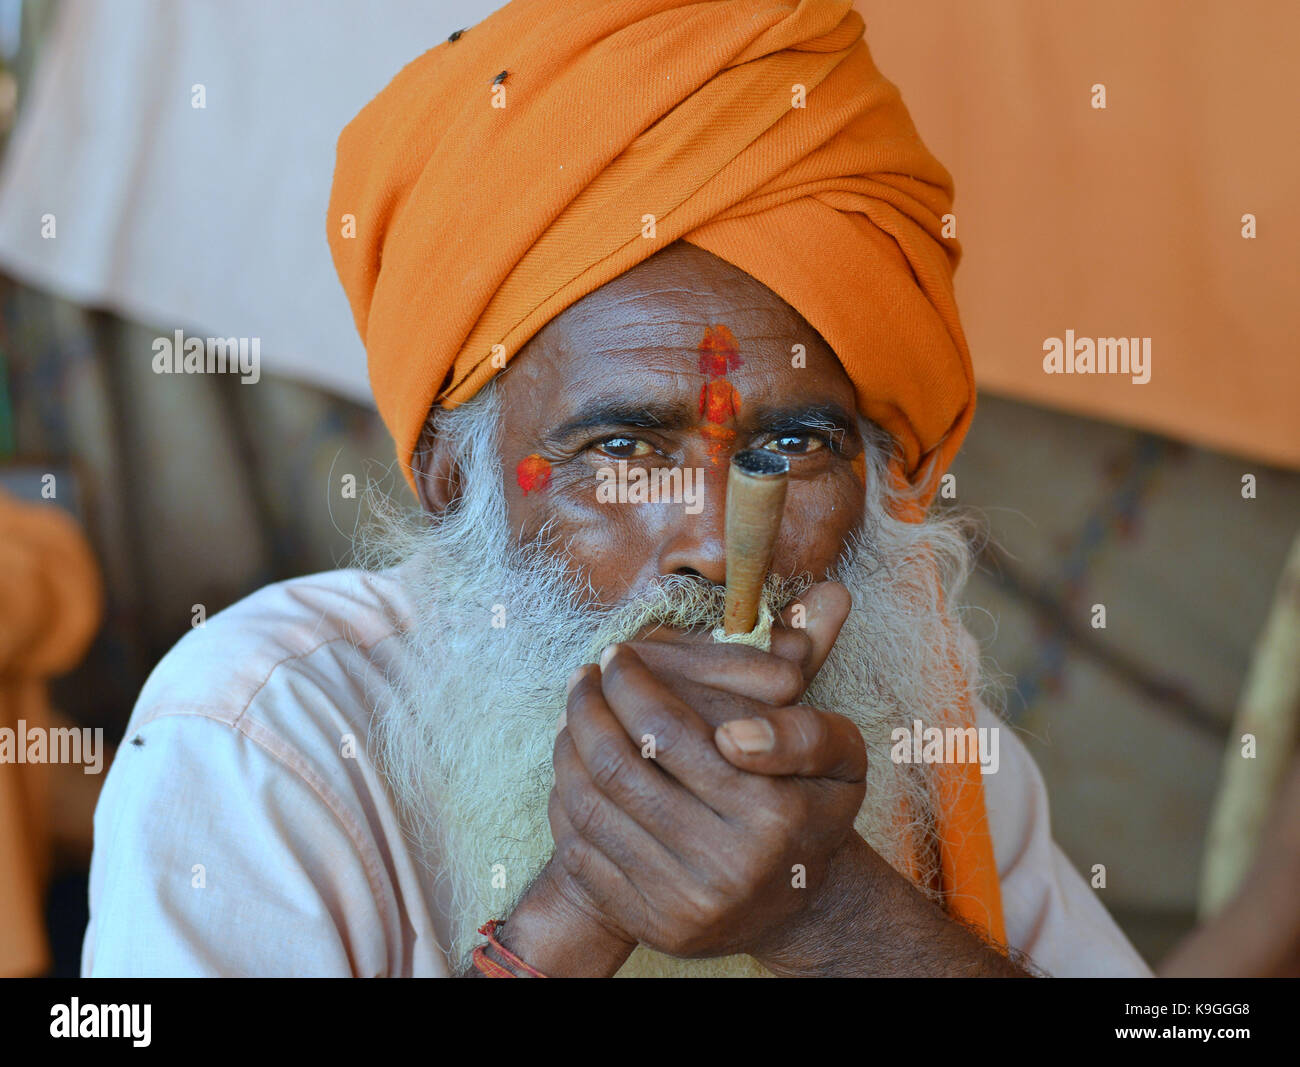 Vieux sadhu avec turban orange, épaisse barbe blanche et deux marques tilaka rouge sur son front (un au-dessus de l'autre), fumer du haschisch dans une pipe chillum Banque D'Images